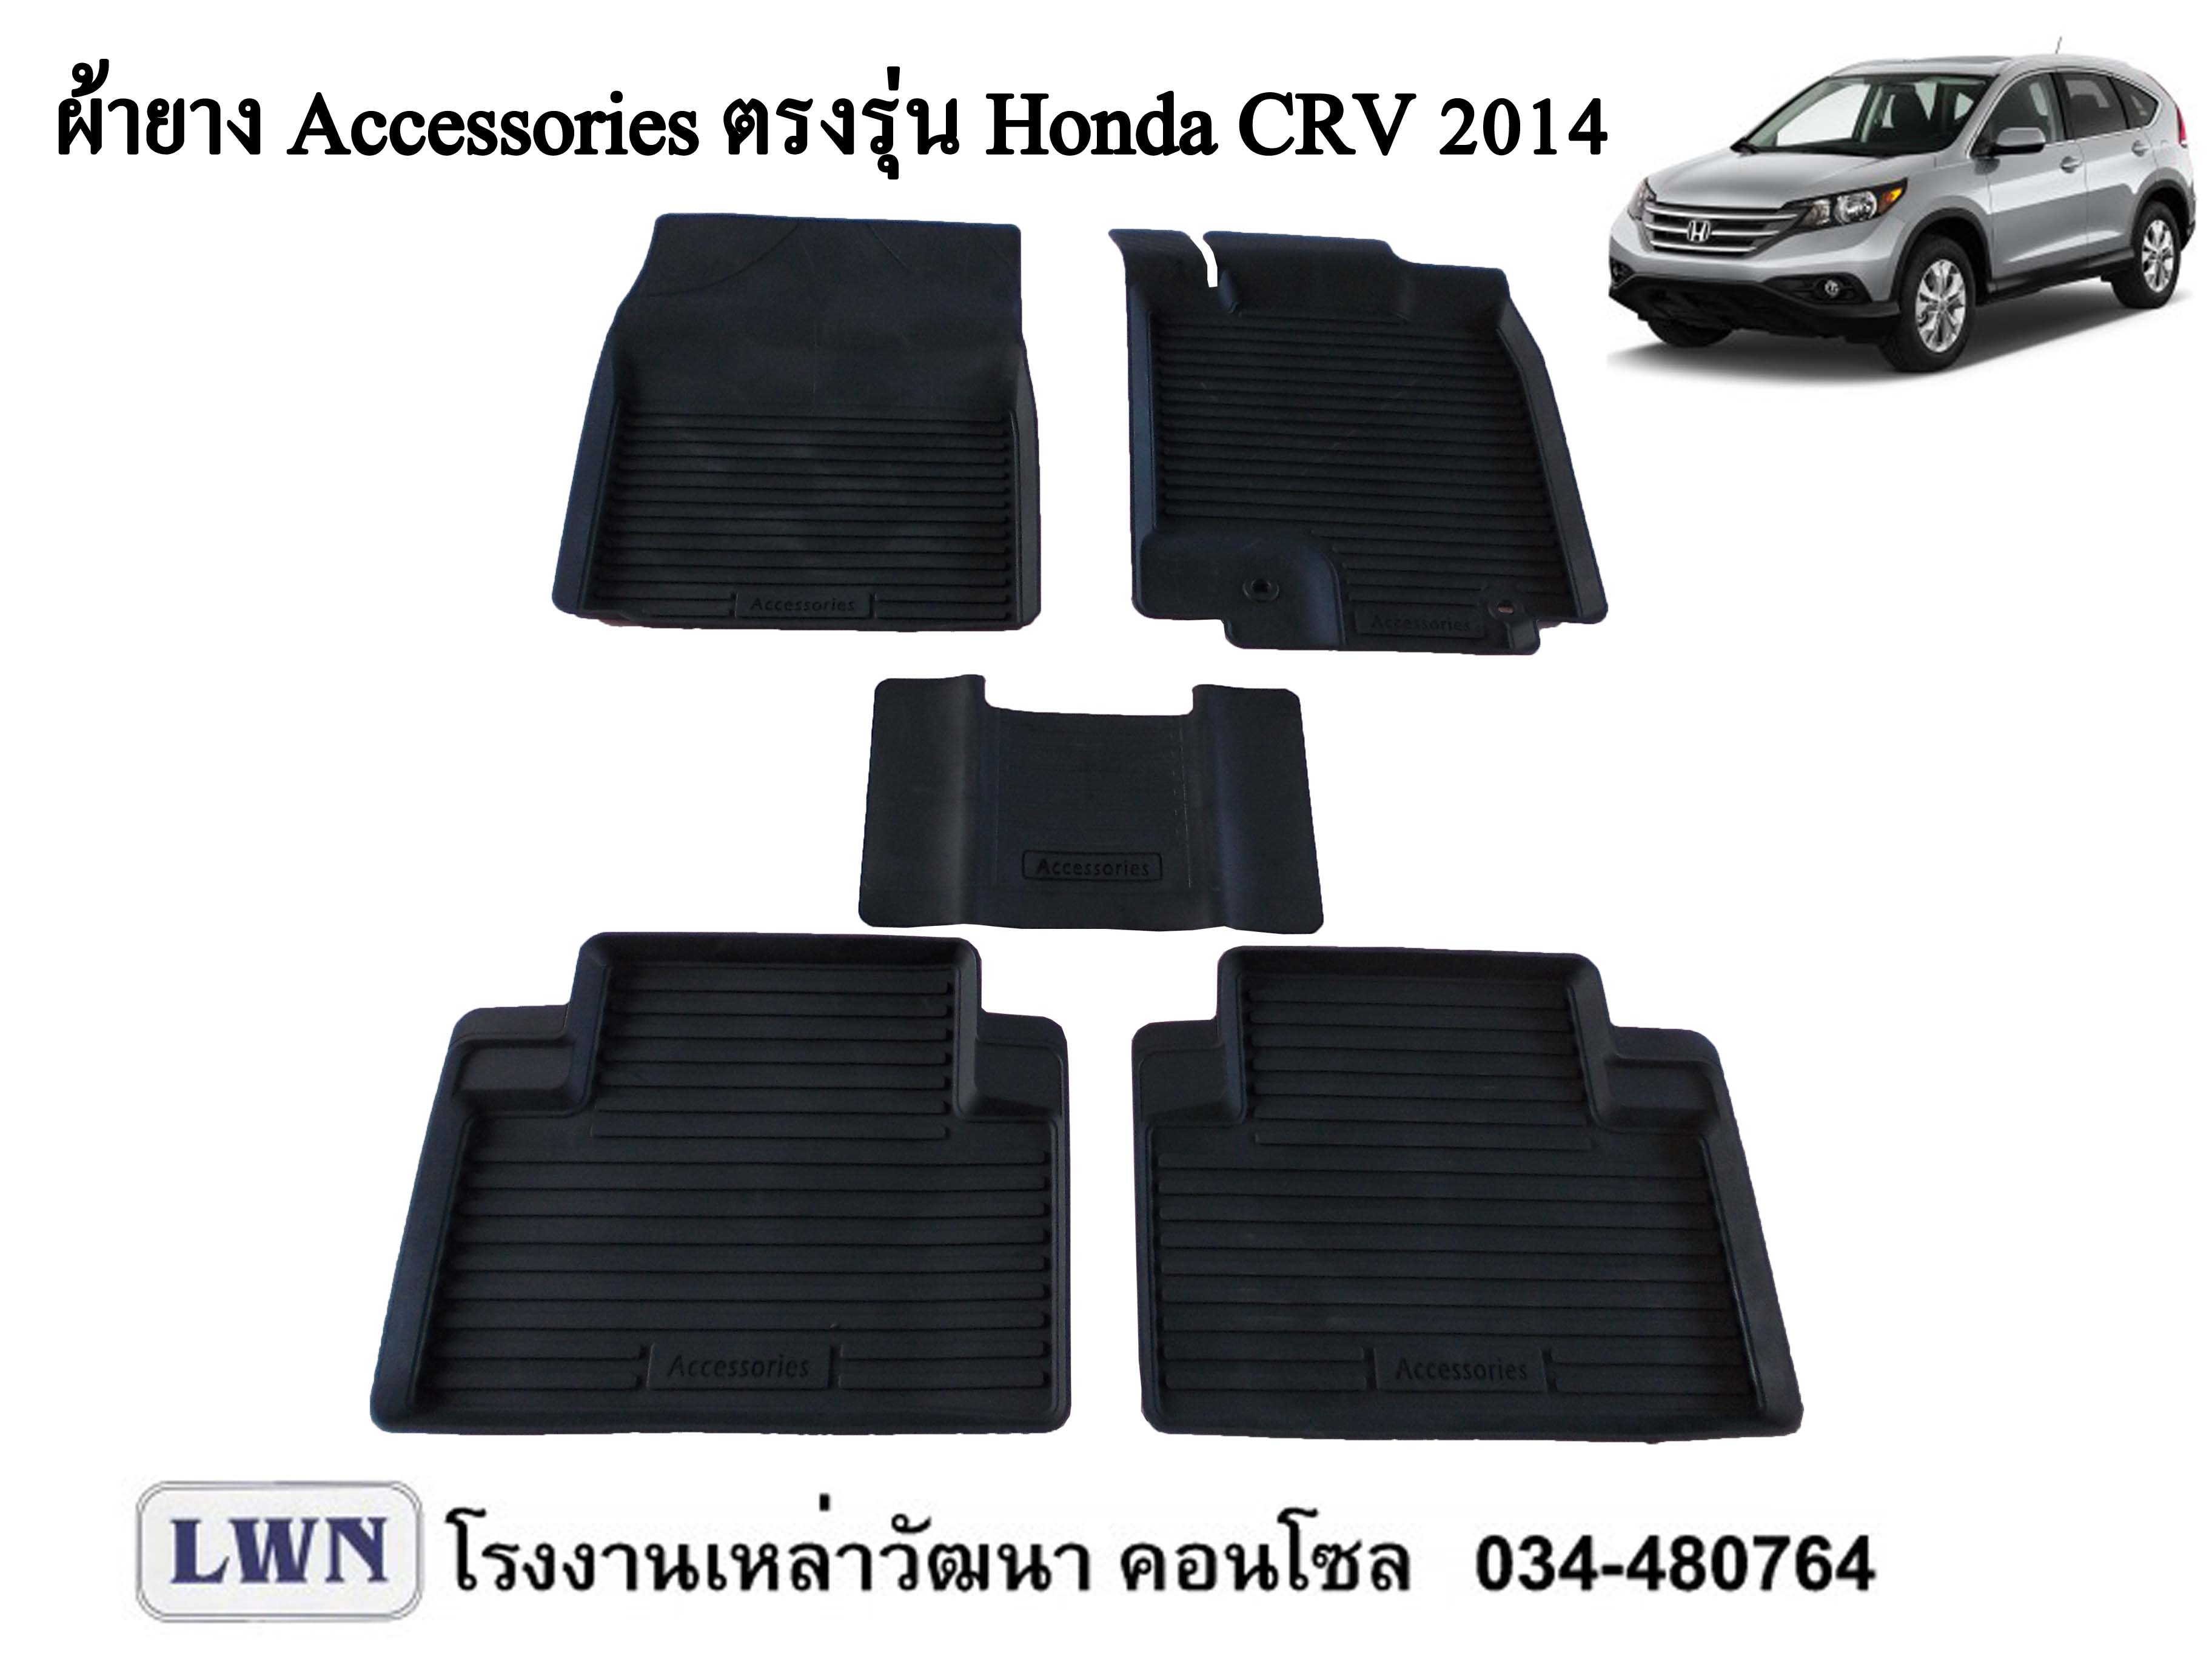 ACC-Honda CRV